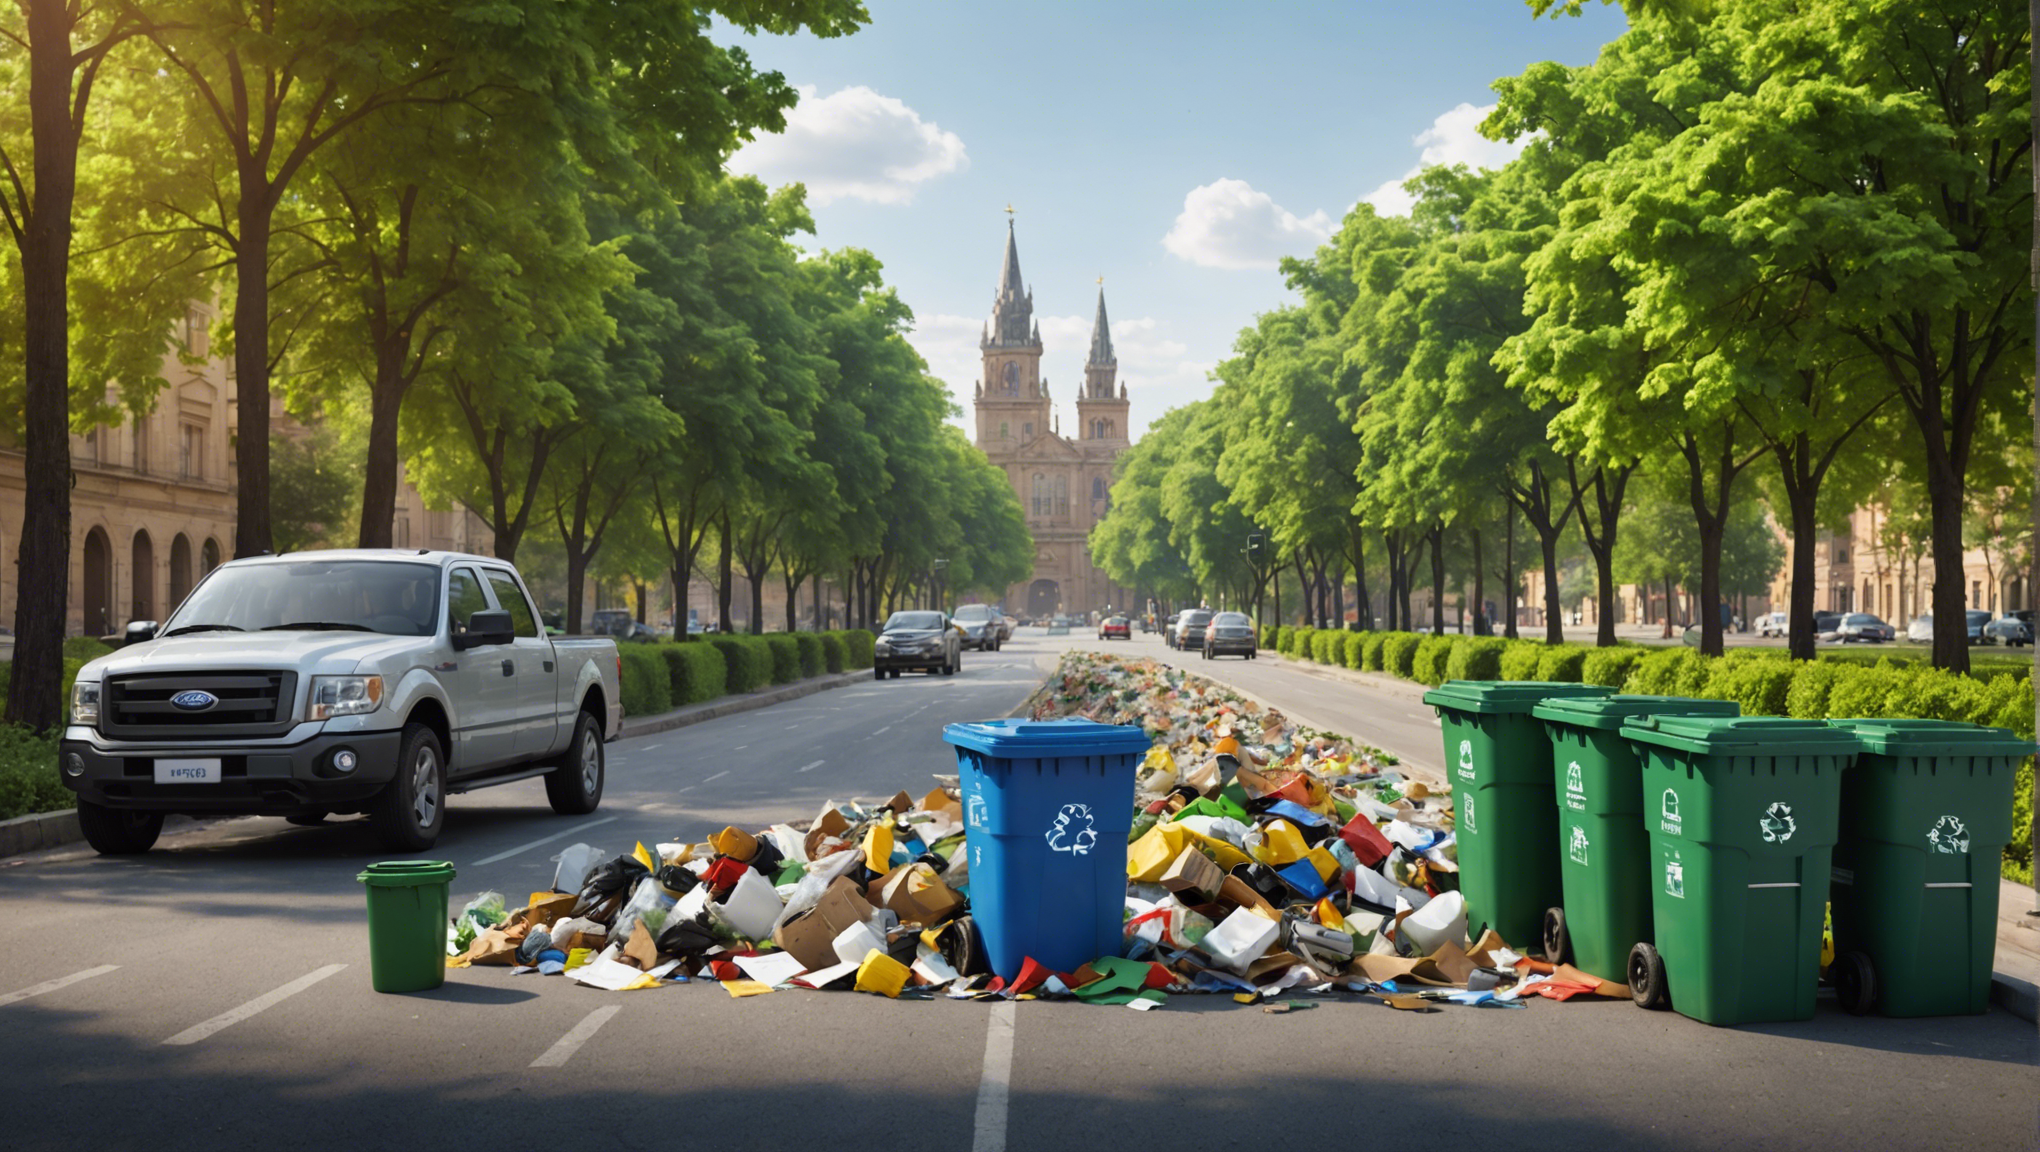 découvrez comment adopter une gestion raisonnée des déchets pour préserver l'environnement et agir en faveur du développement durable.